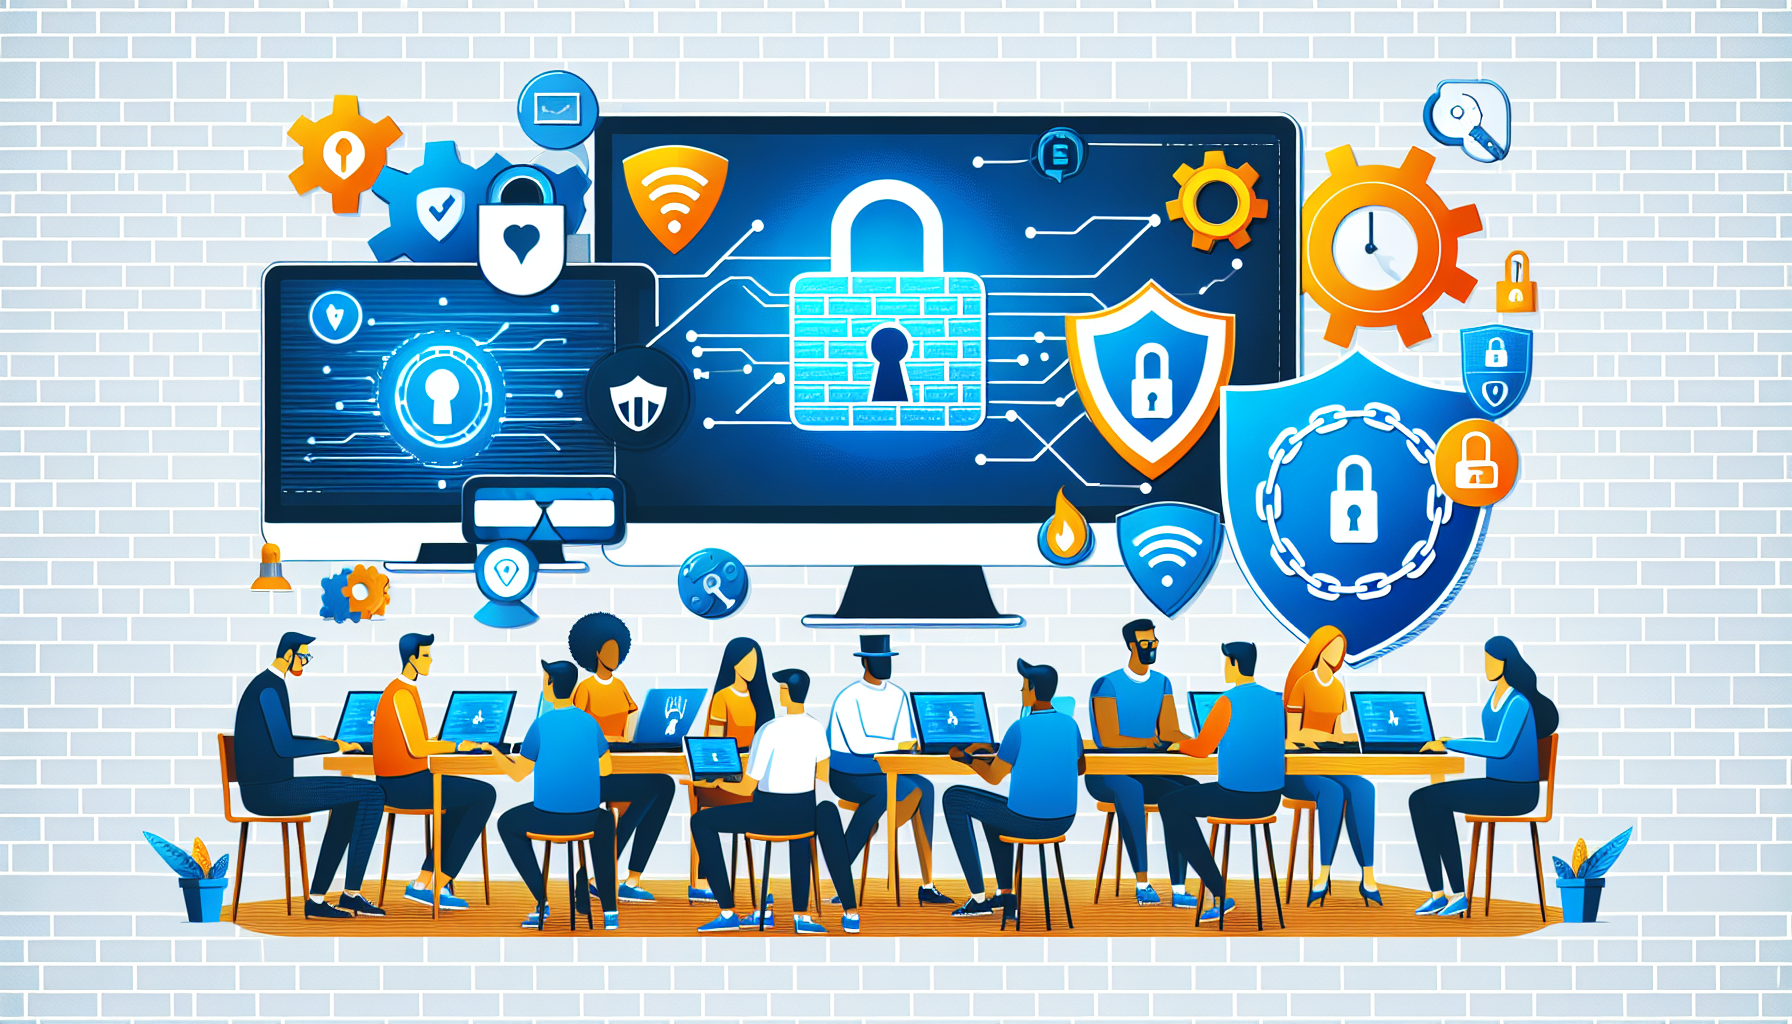 suivez notre formation sur les risques en cybersécurité pour acquérir les compétences nécessaires à la protection des systèmes et des données contre les menaces informatiques.